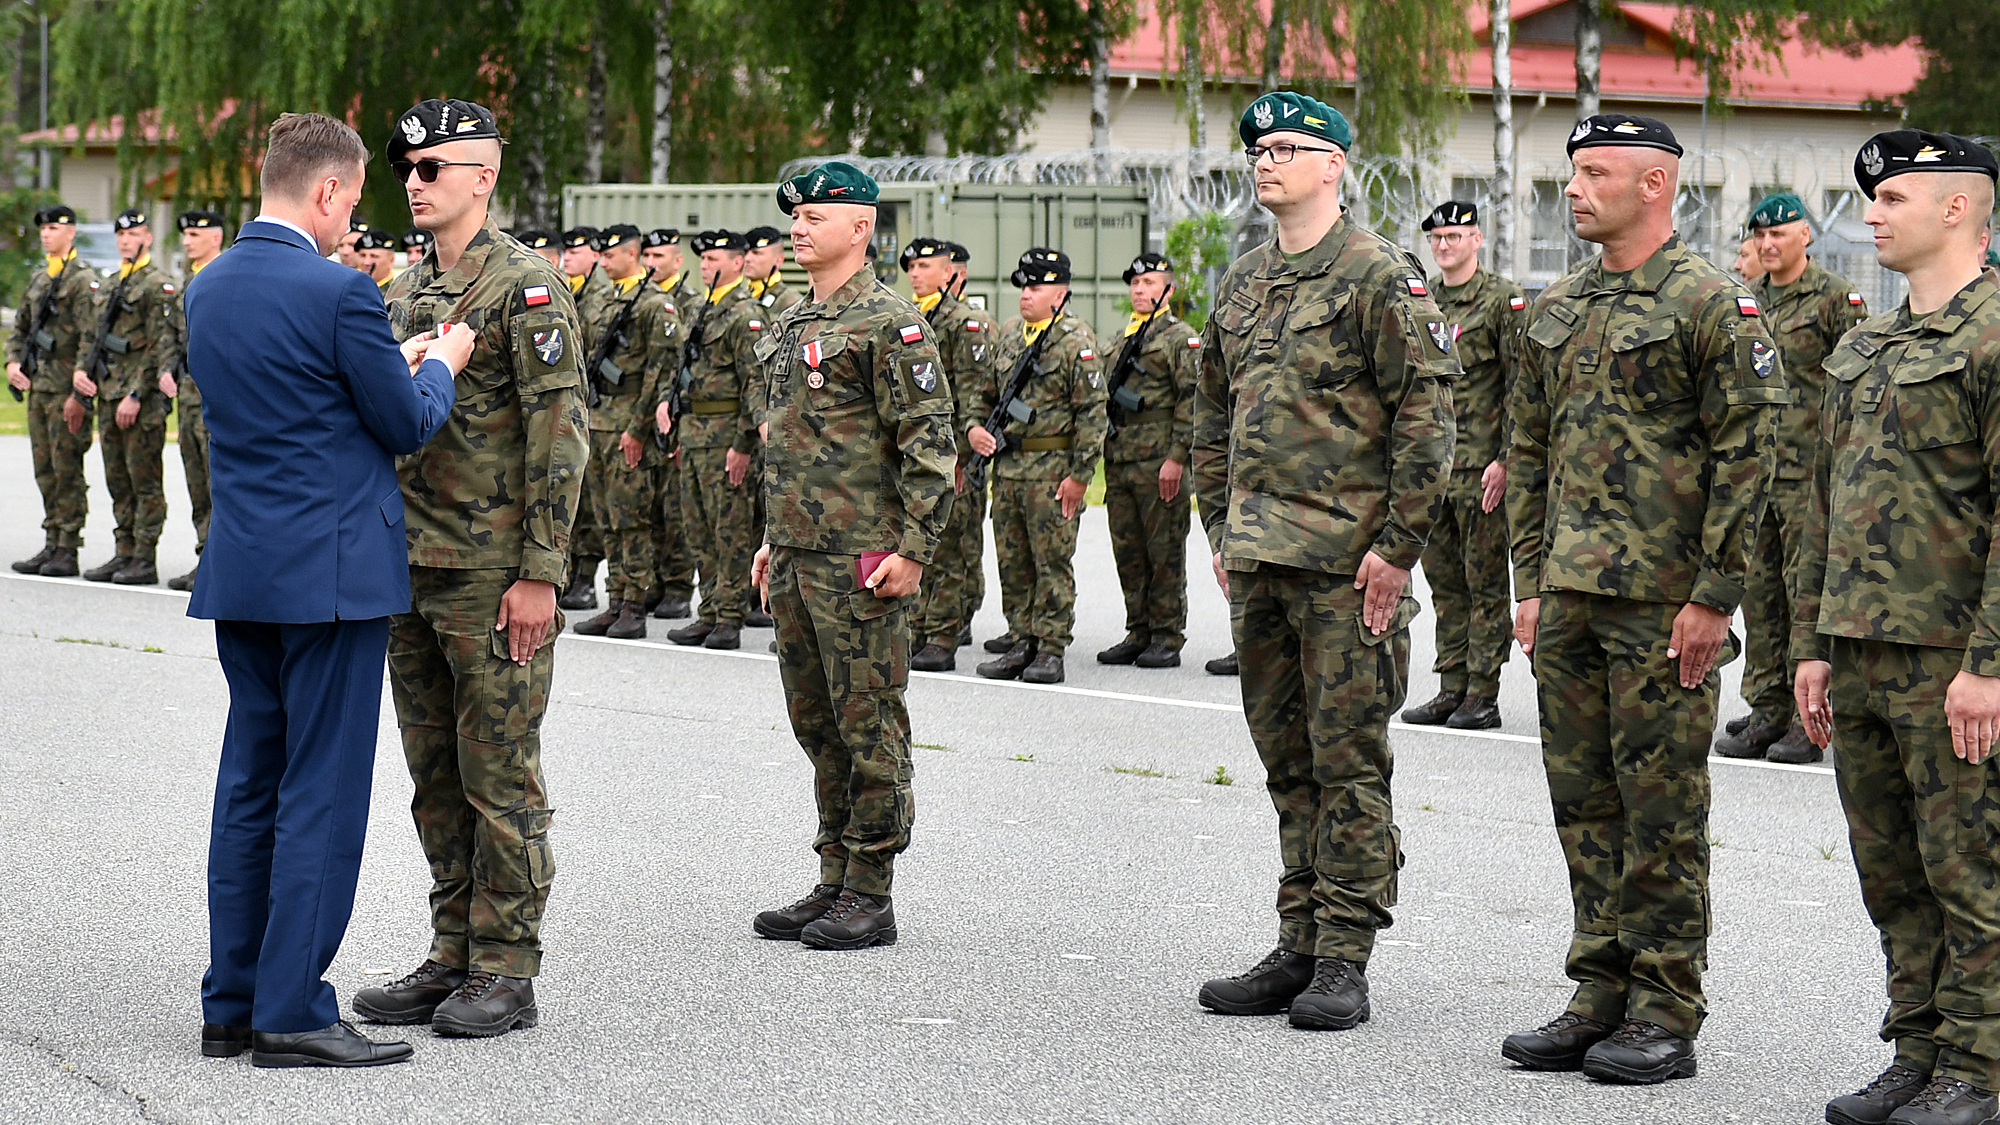 21 czerwca br., Mariusz Błaszczak, minister obrony narodowej odwiedził żołnierzy w Polskim Kontyngencie Wojskowym w bazie Ādaži na Łotwie.